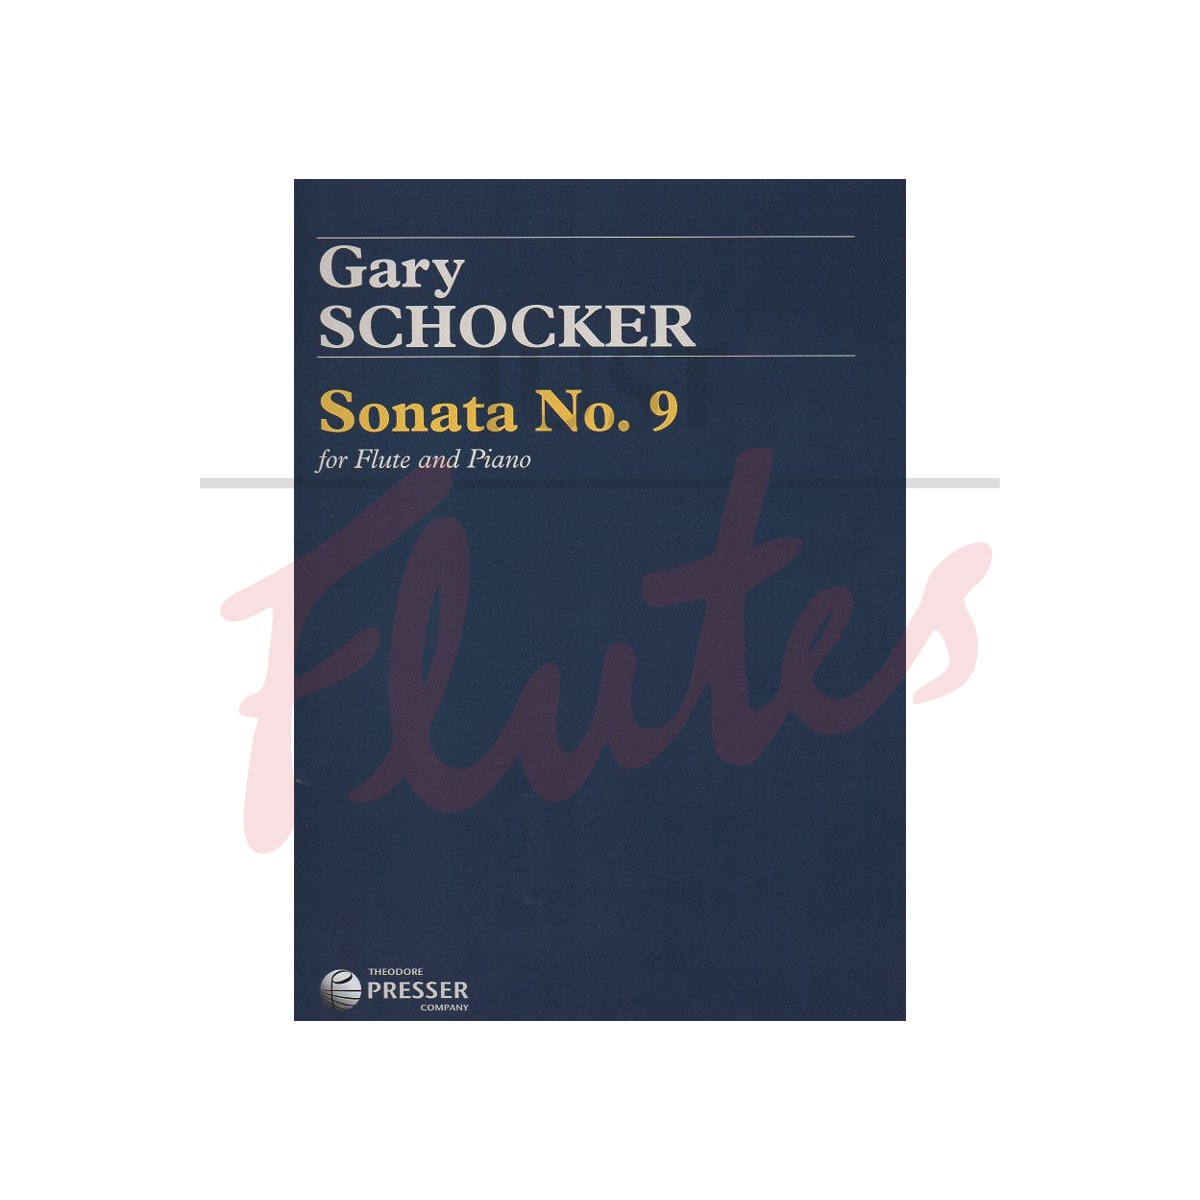 Sonata No 9 for Flute and Piano